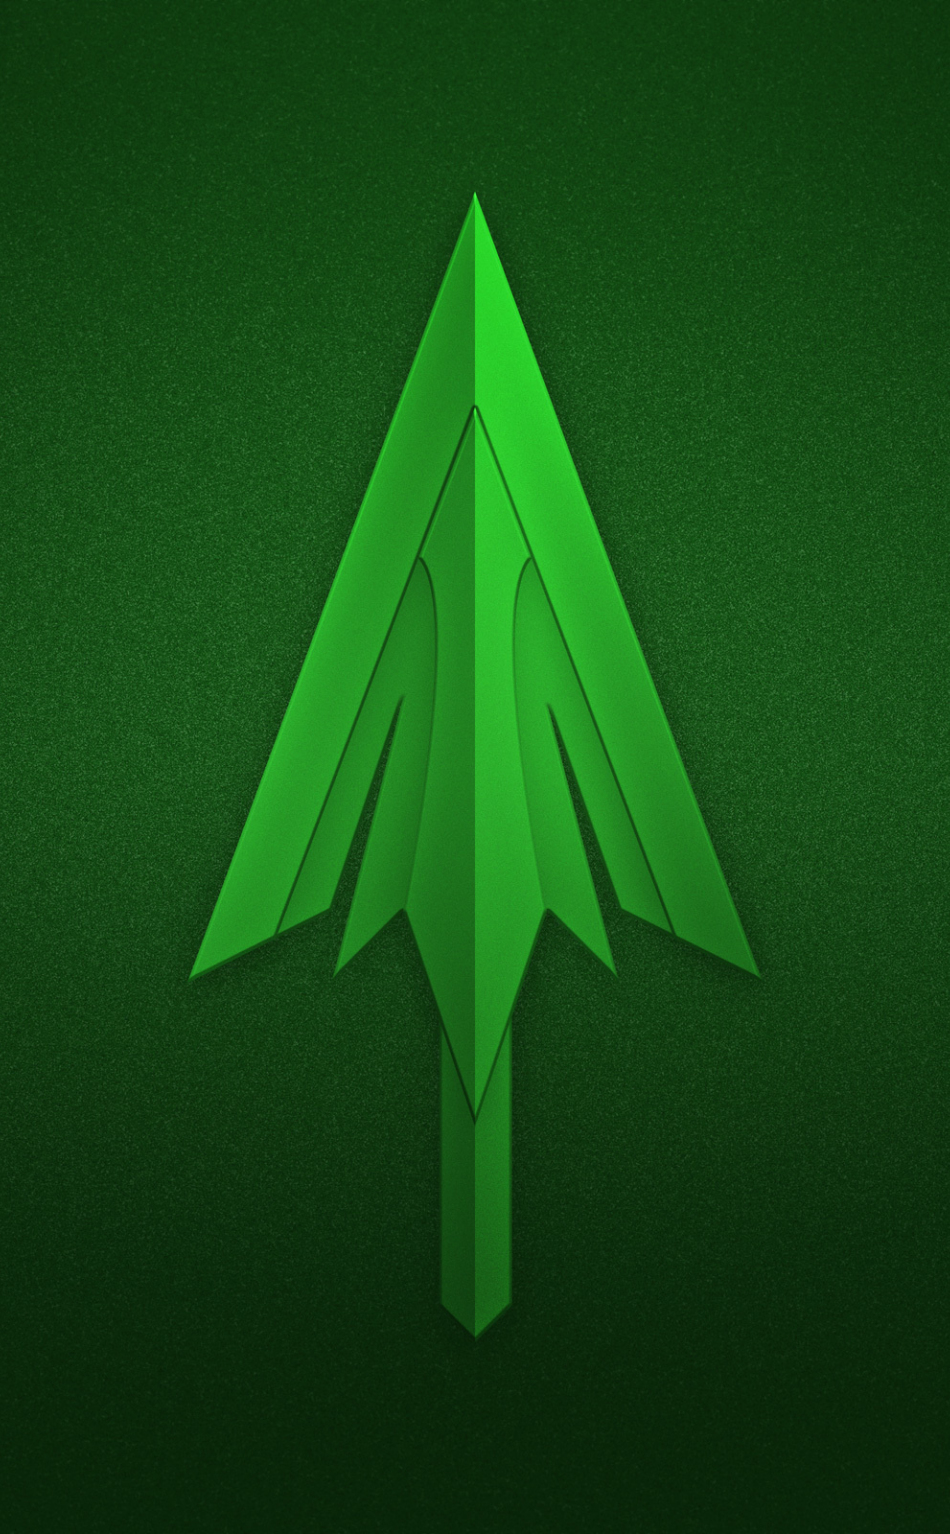 green arrow 4k ultra hd wallpaper background image on green arrow logo wallpaper